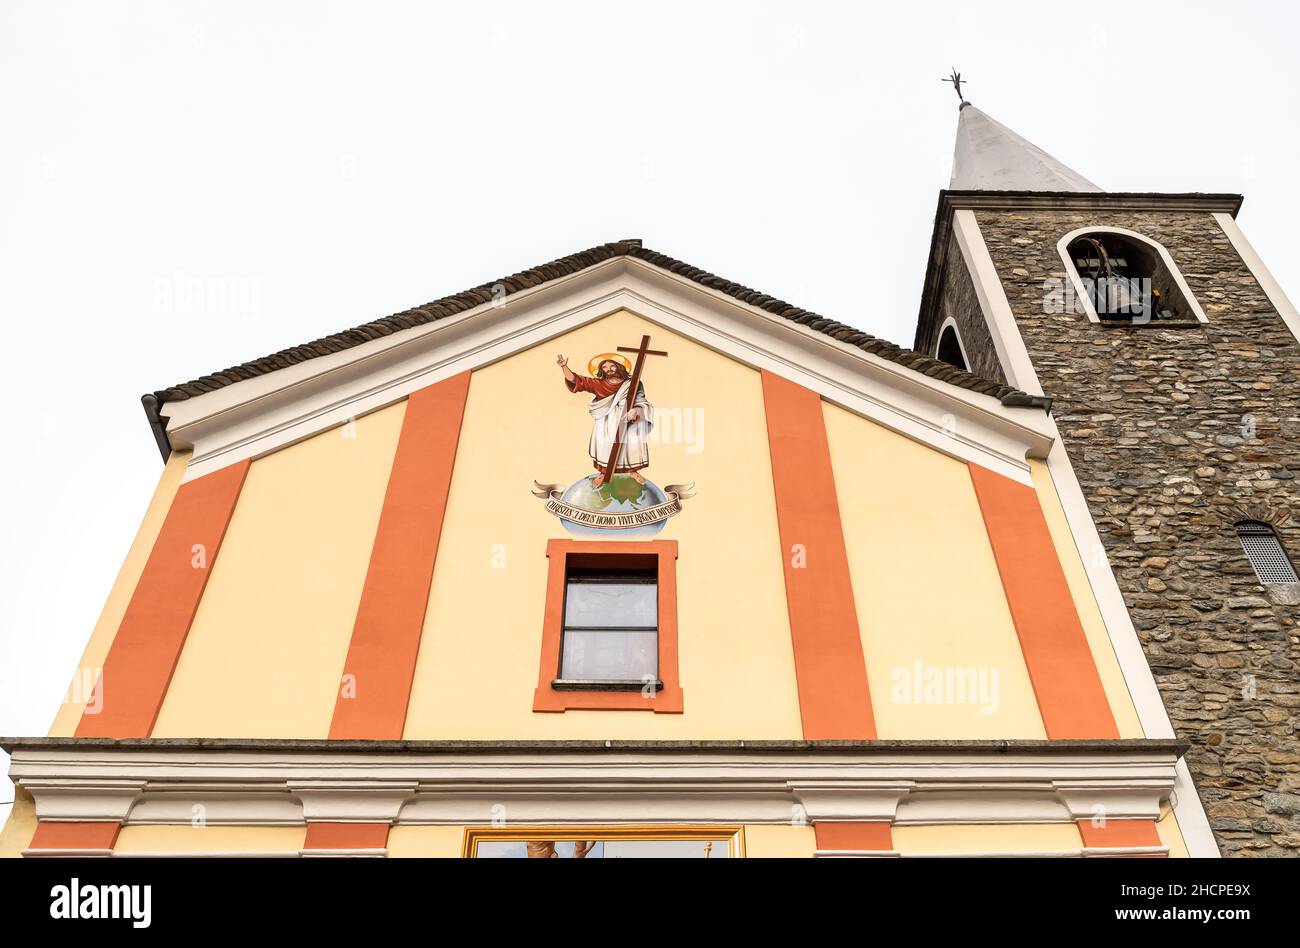 Façade de l'église catholique des Saints Rocco et Sebastiano à Gorduno, quartier de Bellinzona, Tessin, Suisse. Banque D'Images